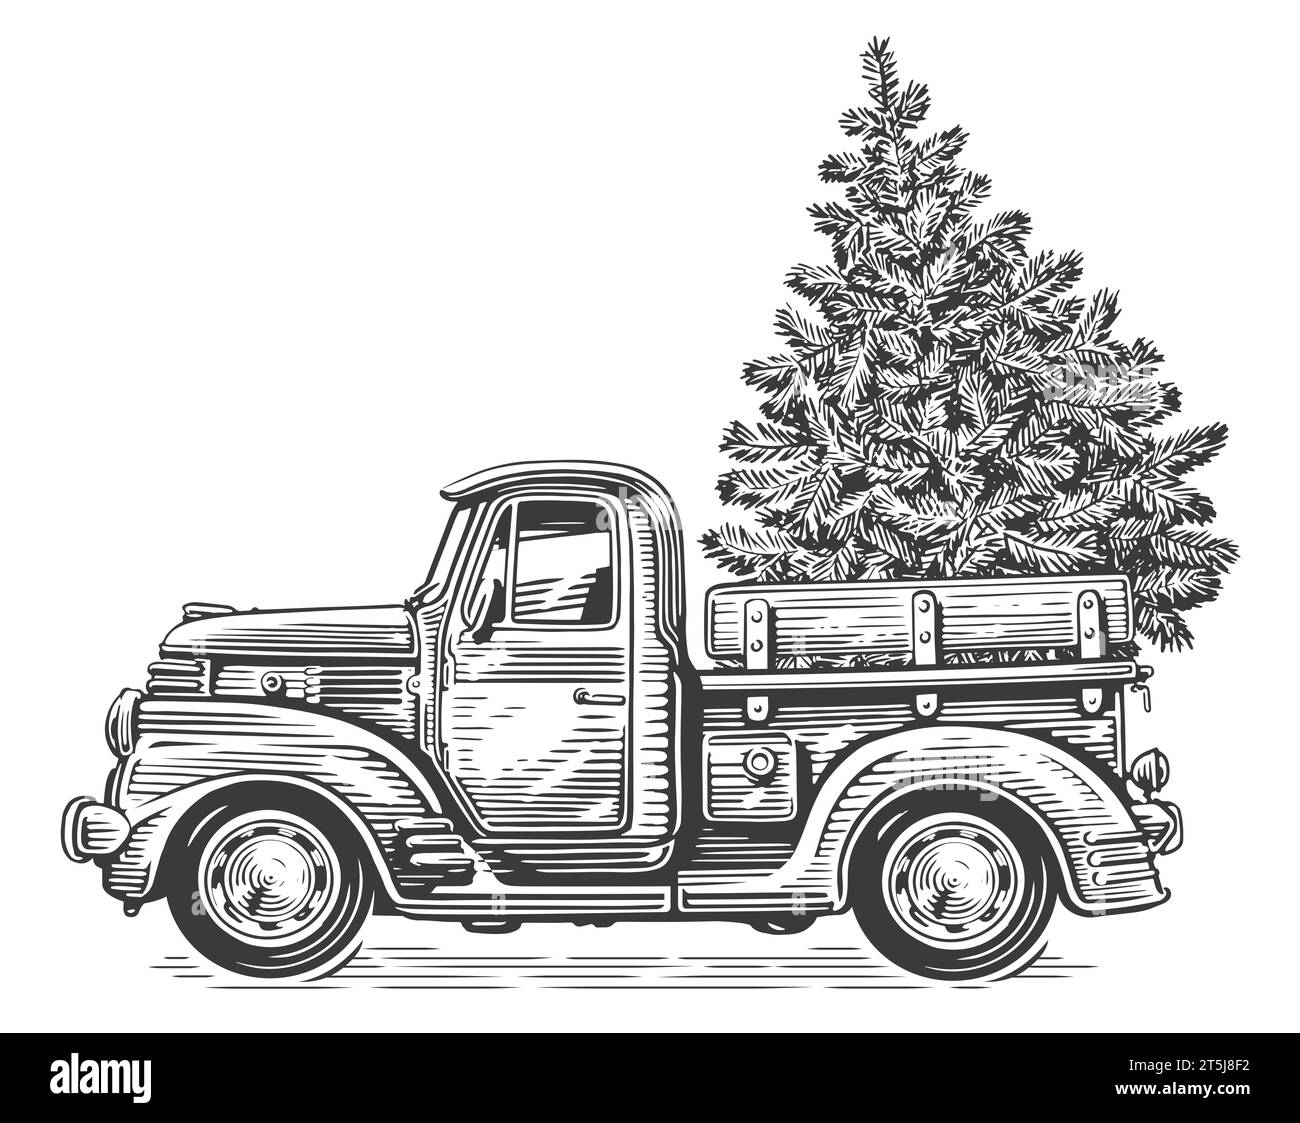 Camion retrò natalizio con pino. Disegno disegnato a mano stile vintage per incidere Foto Stock